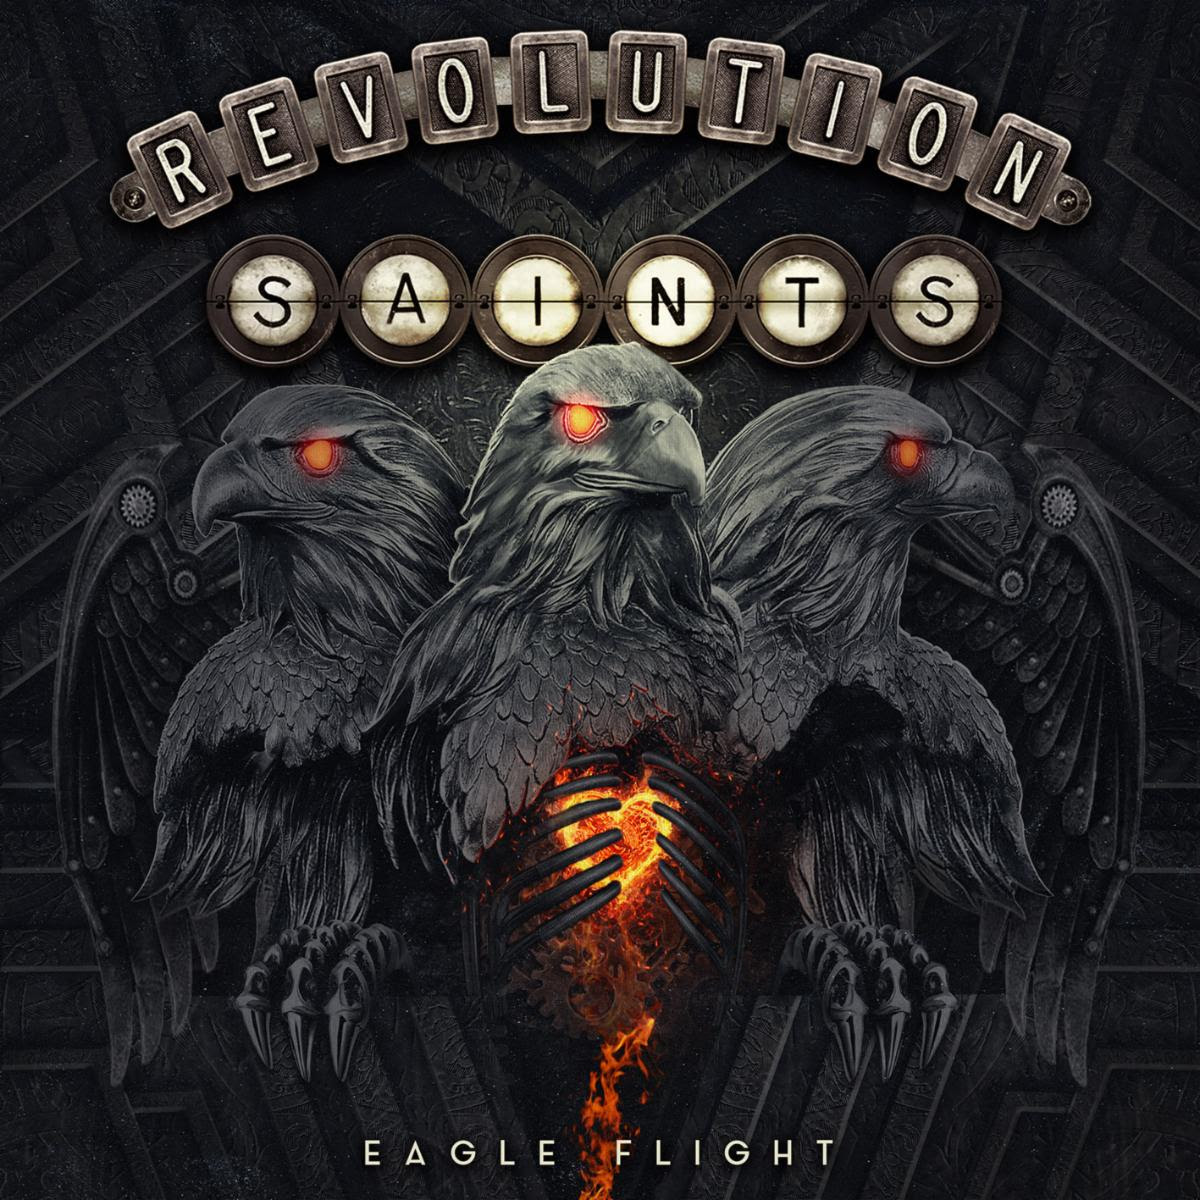 REVOLUTION SAINTS Announce New Studio Album Featuring New Guitarist Joel Hoekstra & New Bassist Jeff Pilson 'EAGLE FLIGHT' Out April 21